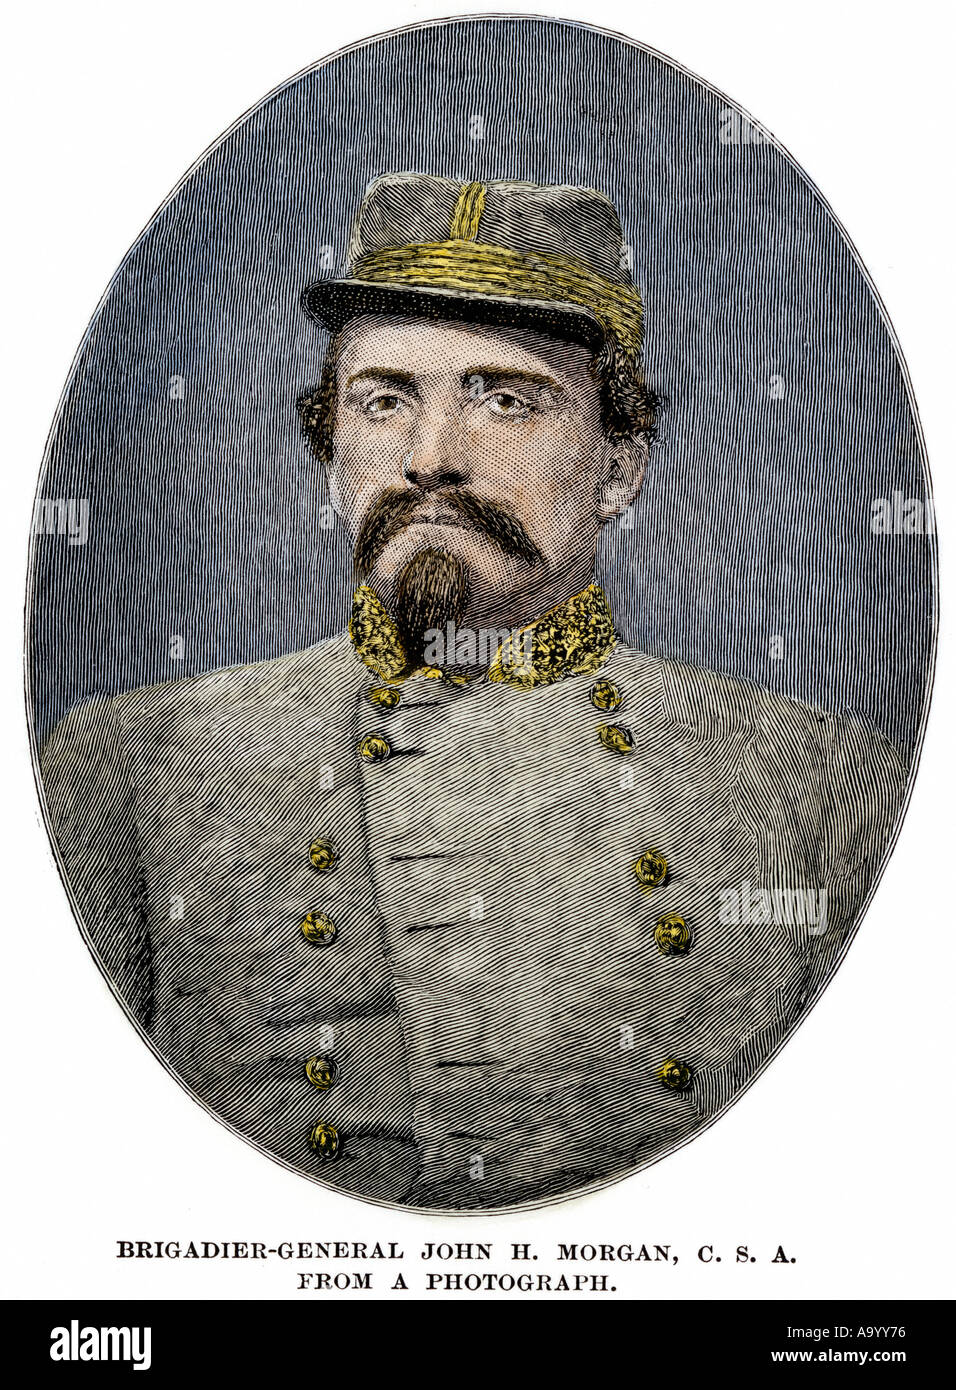 John Hunt Morgan officier de cavalerie confédérée durant la guerre de Sécession. À la main, gravure sur bois Banque D'Images